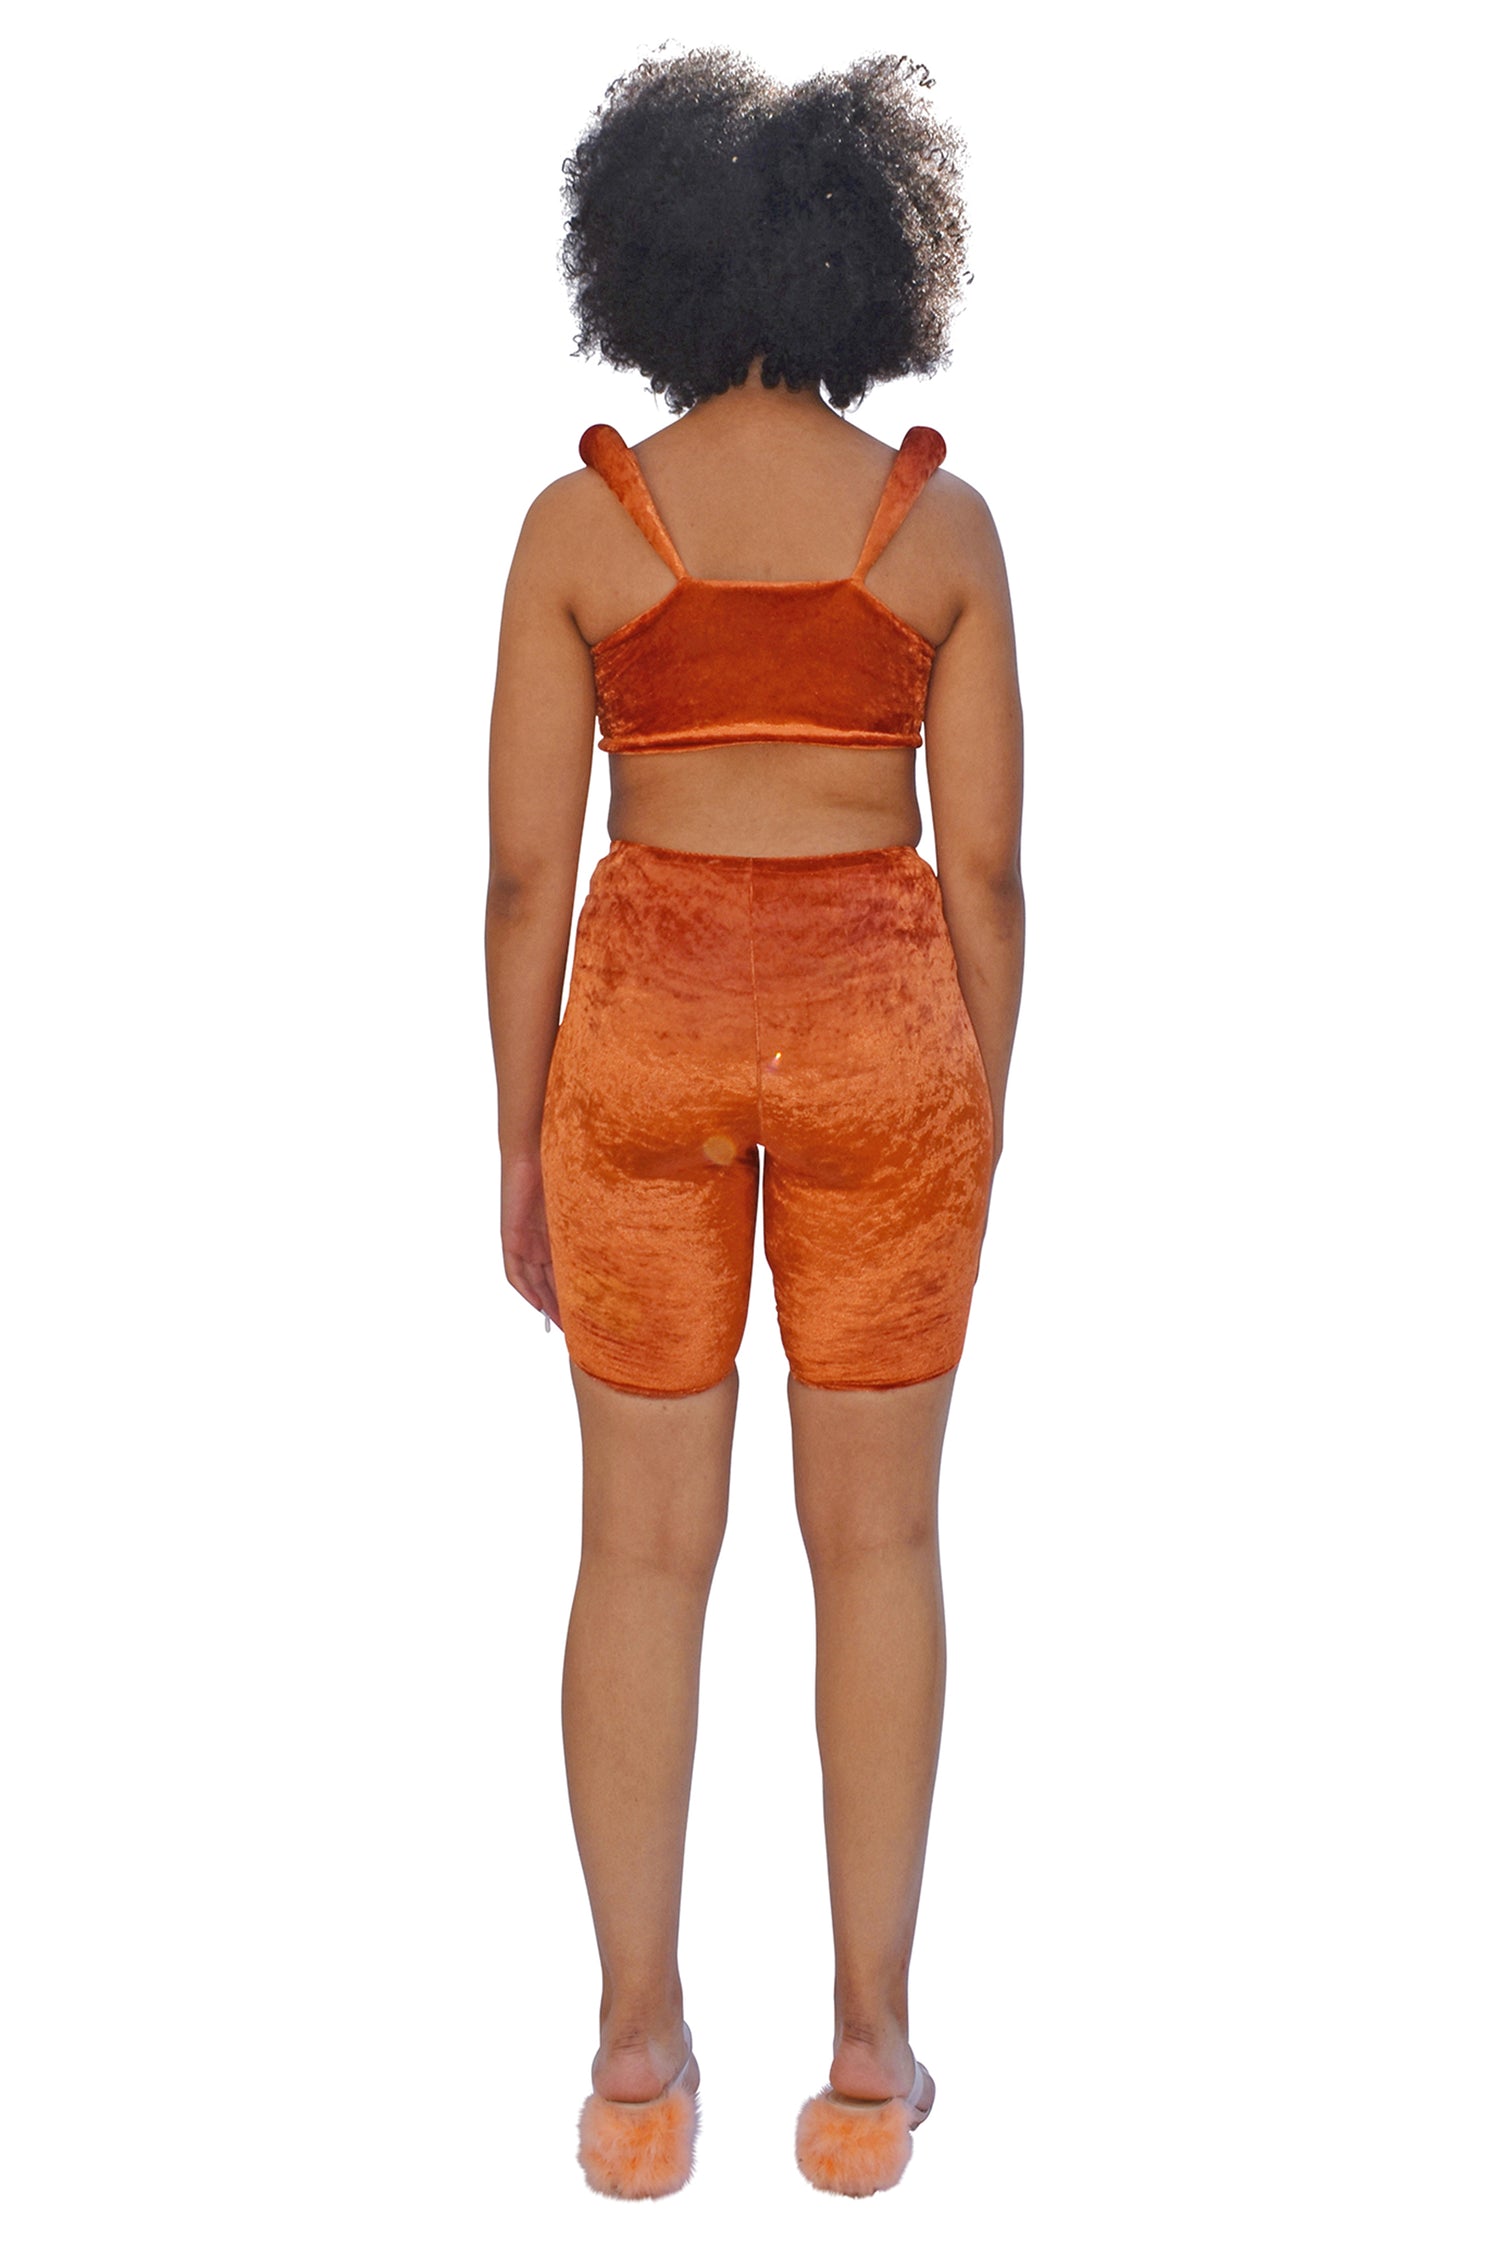 No Wallflower Project Padded Shoulder Bodice in burnt orange velvet